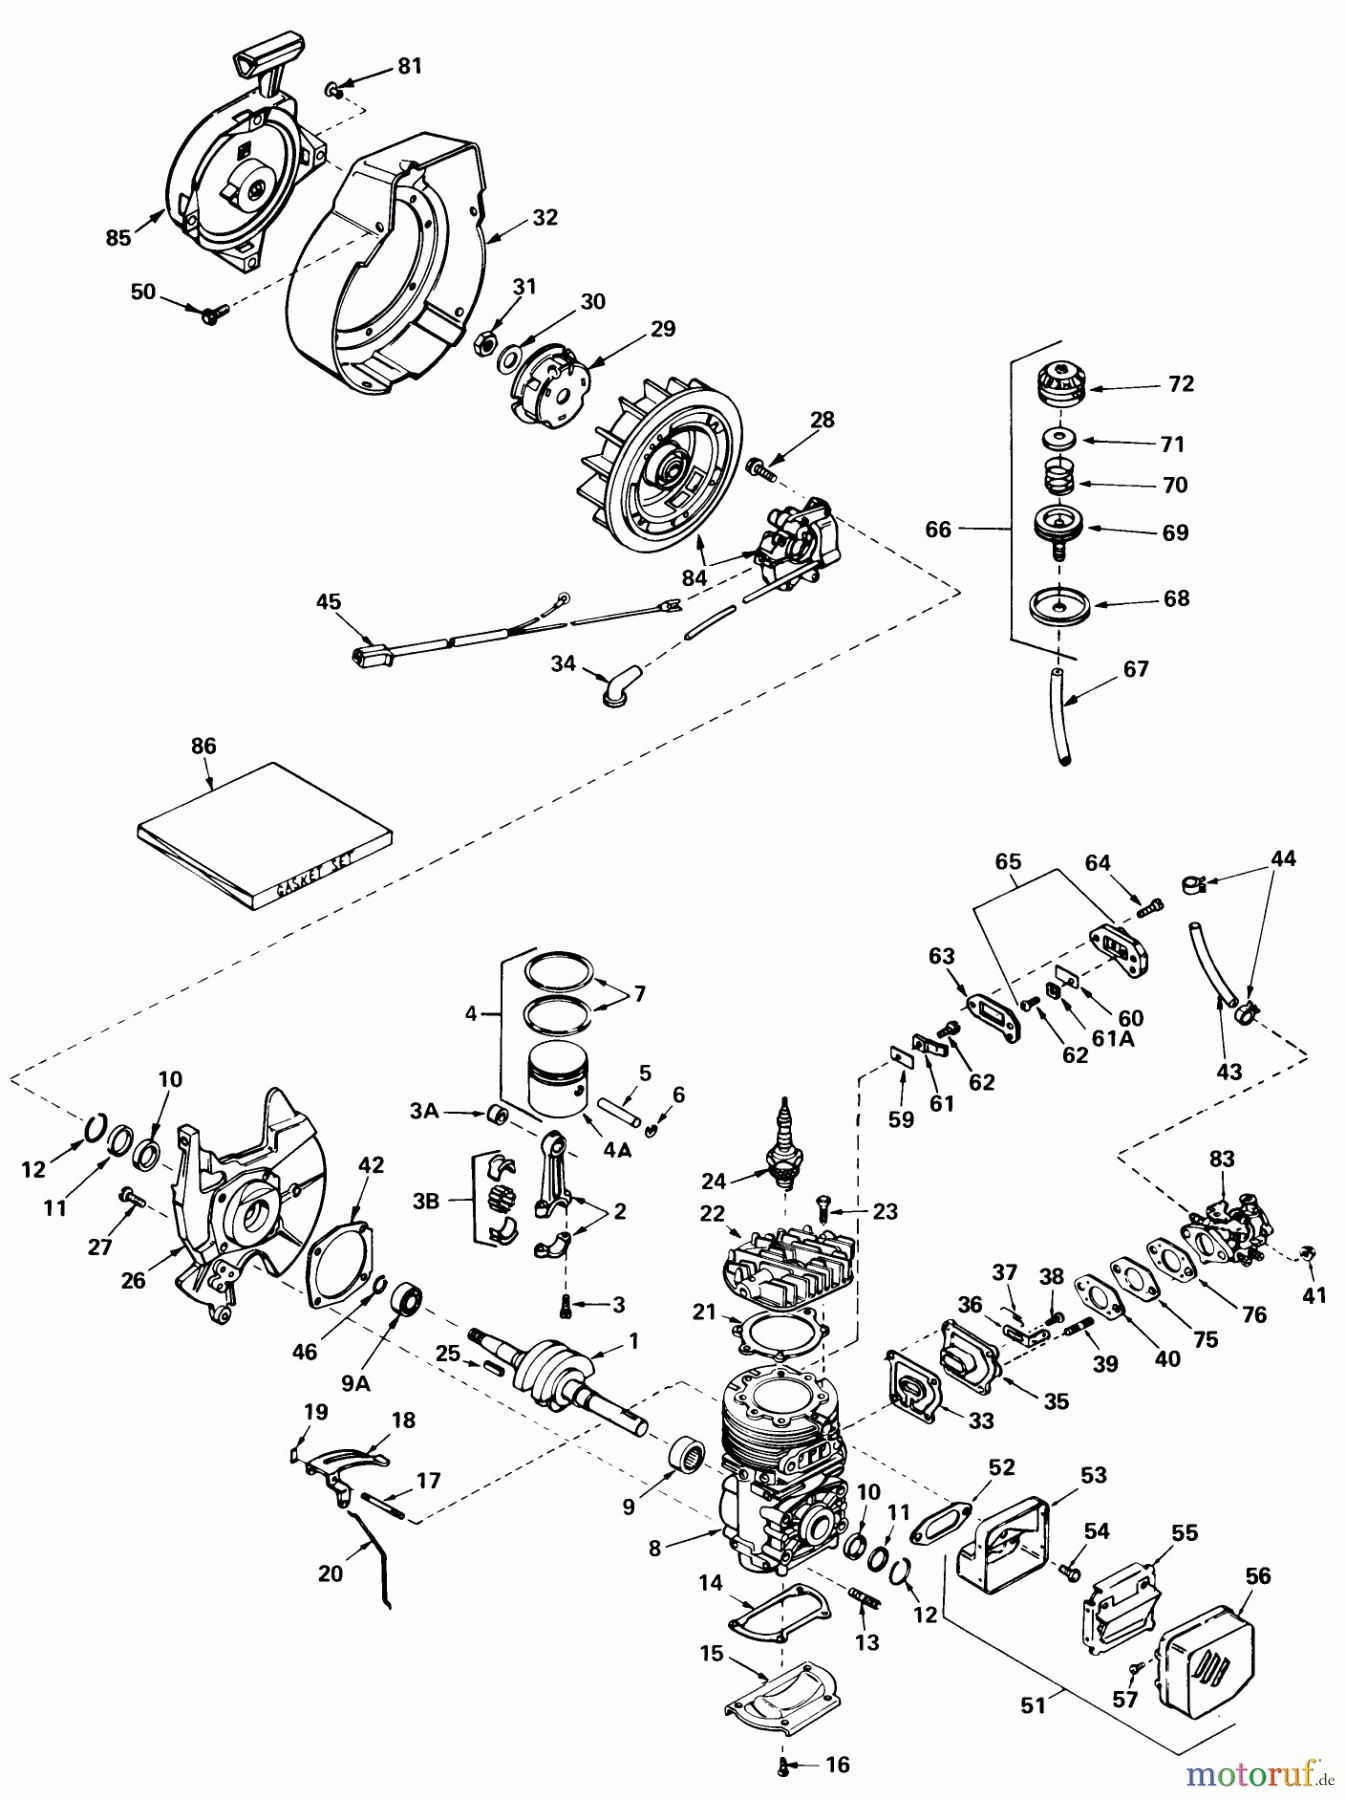  Toro Neu Snow Blowers/Snow Throwers Seite 1 38210 (S-140) - Toro S-140 Snowthrower, 1980 (0000001-0999999) ENGINE TECUMSEH MODEL NO. AH520 TYPE 1584A